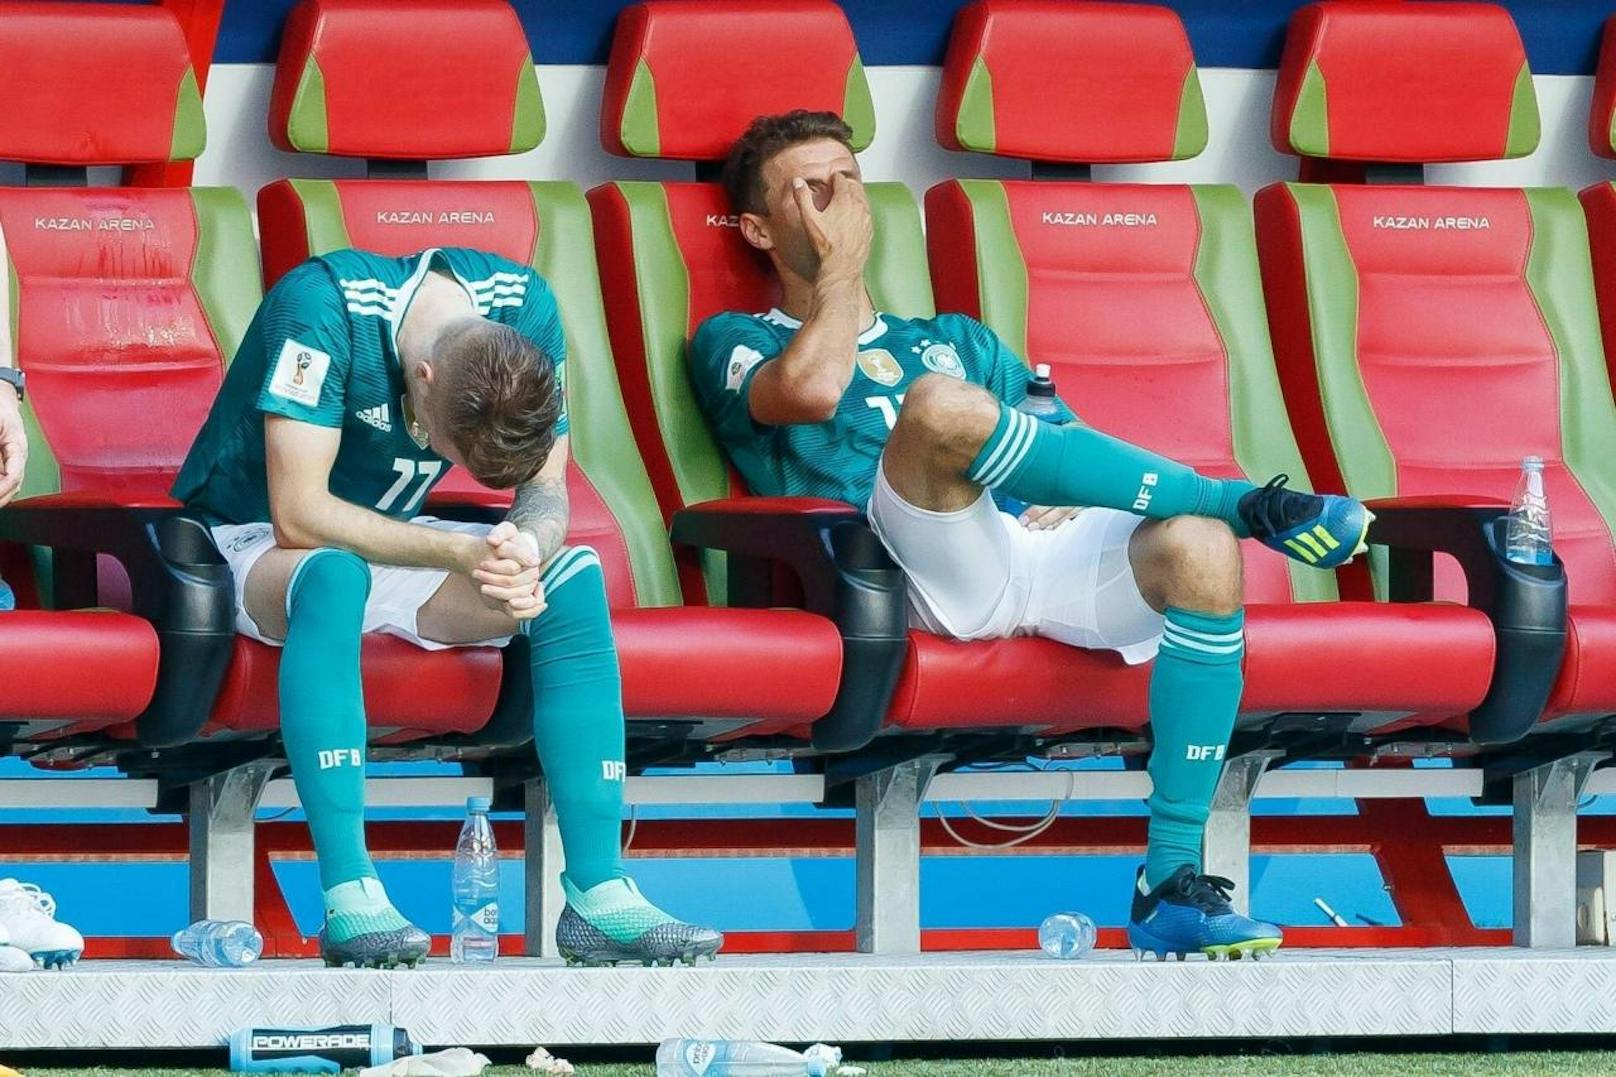 Titelverteidiger Deutschland ist bei der WM in der Vorrunde gescheitert. Thomas Müller und Marco Reus können es nicht fassen. "Heute" hat die besten Bilder.